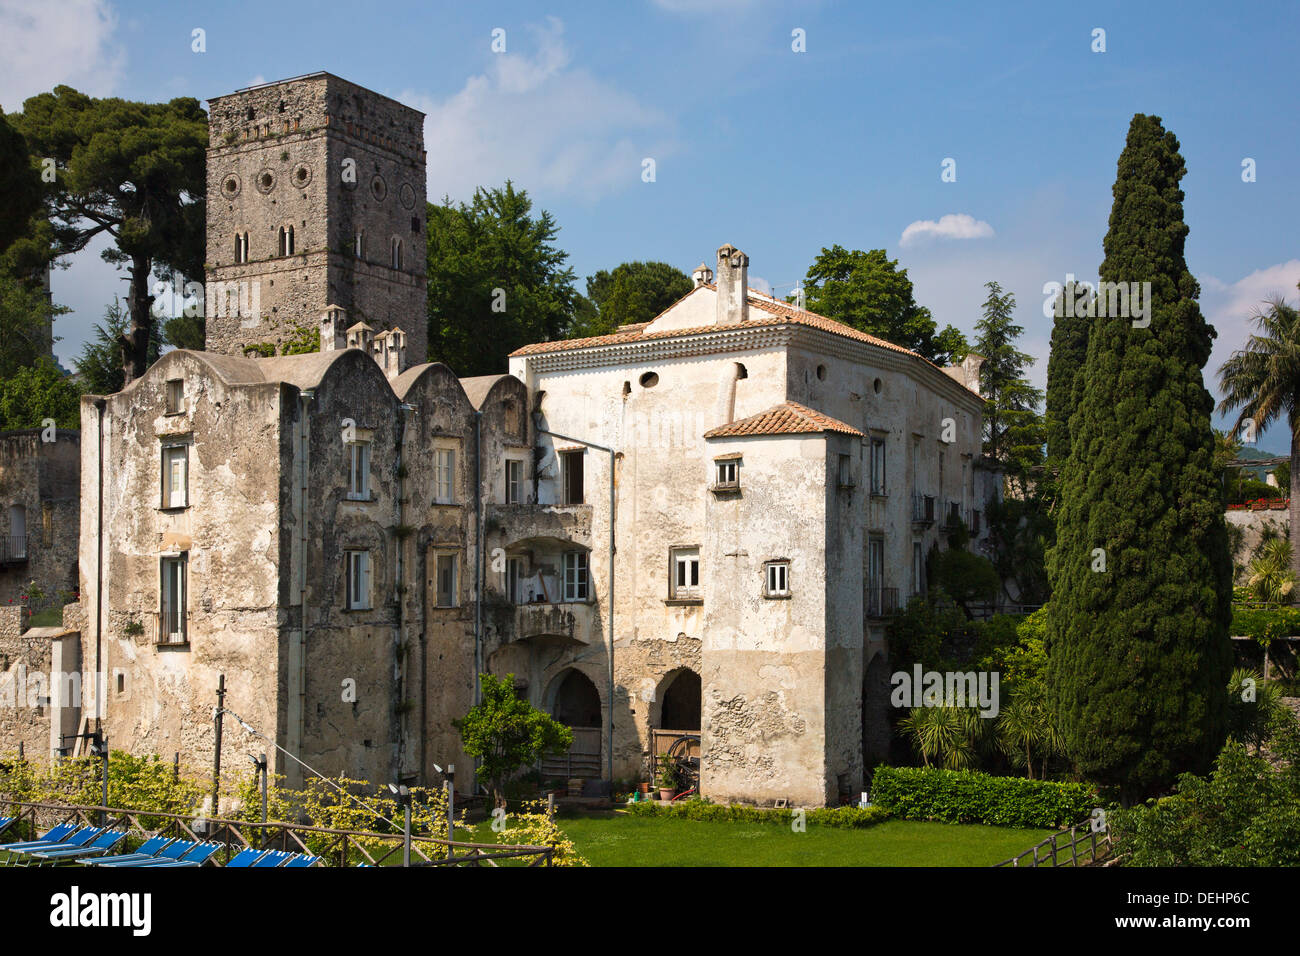 Historic building in a town, Villa Rufolo, Ravello, Salerno Province, Campania, Italy Stock Photo